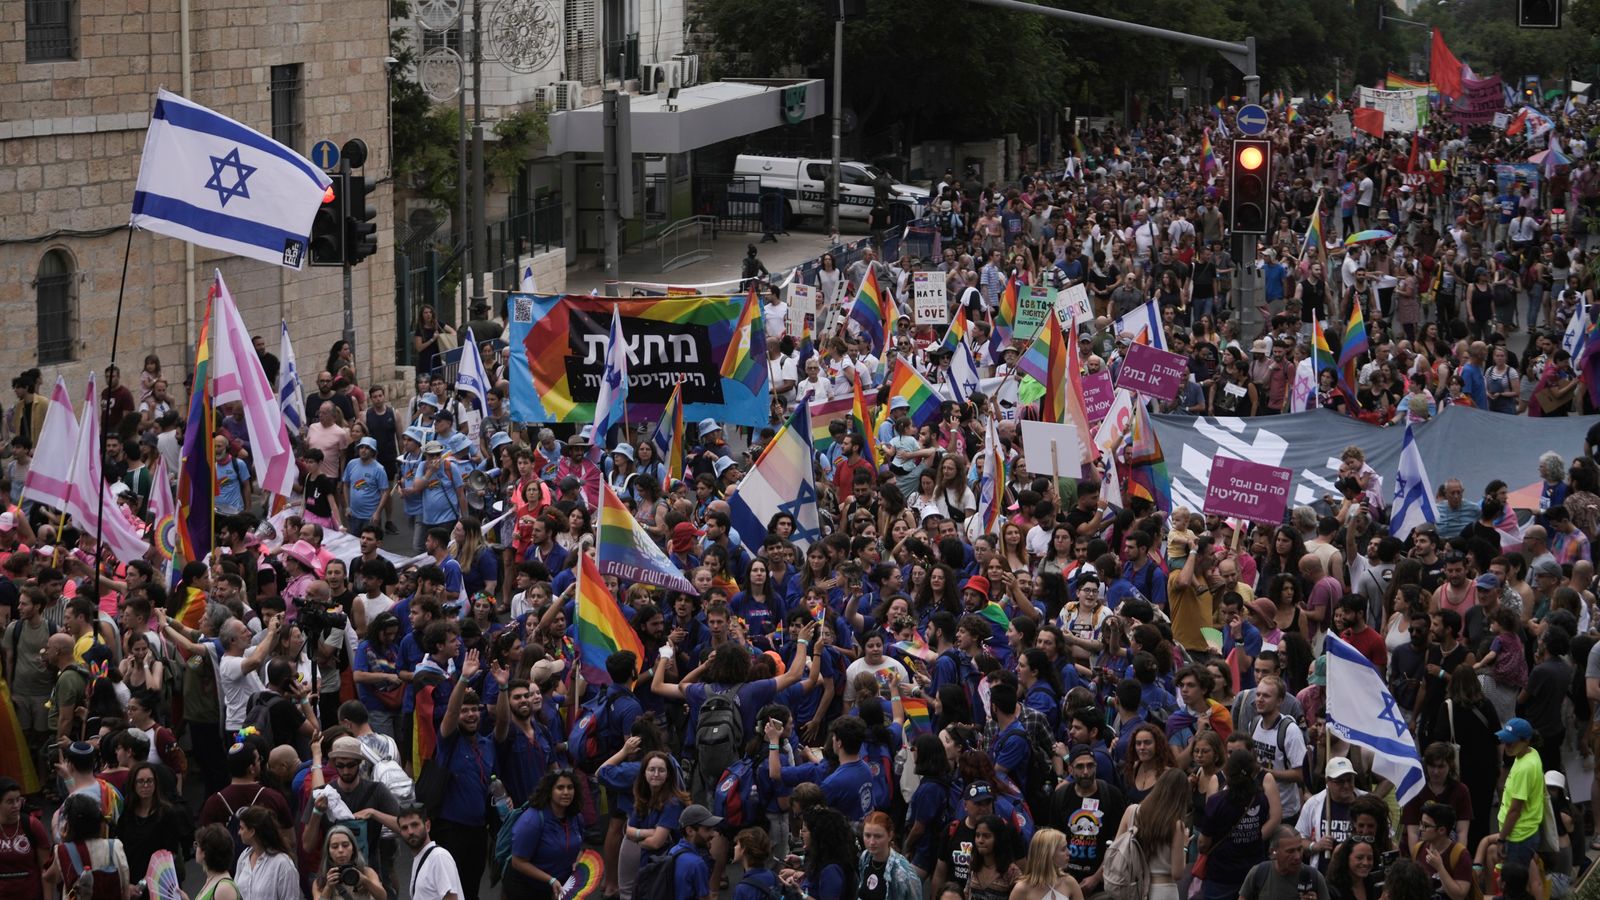 Des milliers de personnes défilent au défilé de la Gay Pride à Jérusalem dans le cadre d’une « lutte commune pour les droits des LGBTQ et la démocratie » |  Nouvelles du monde